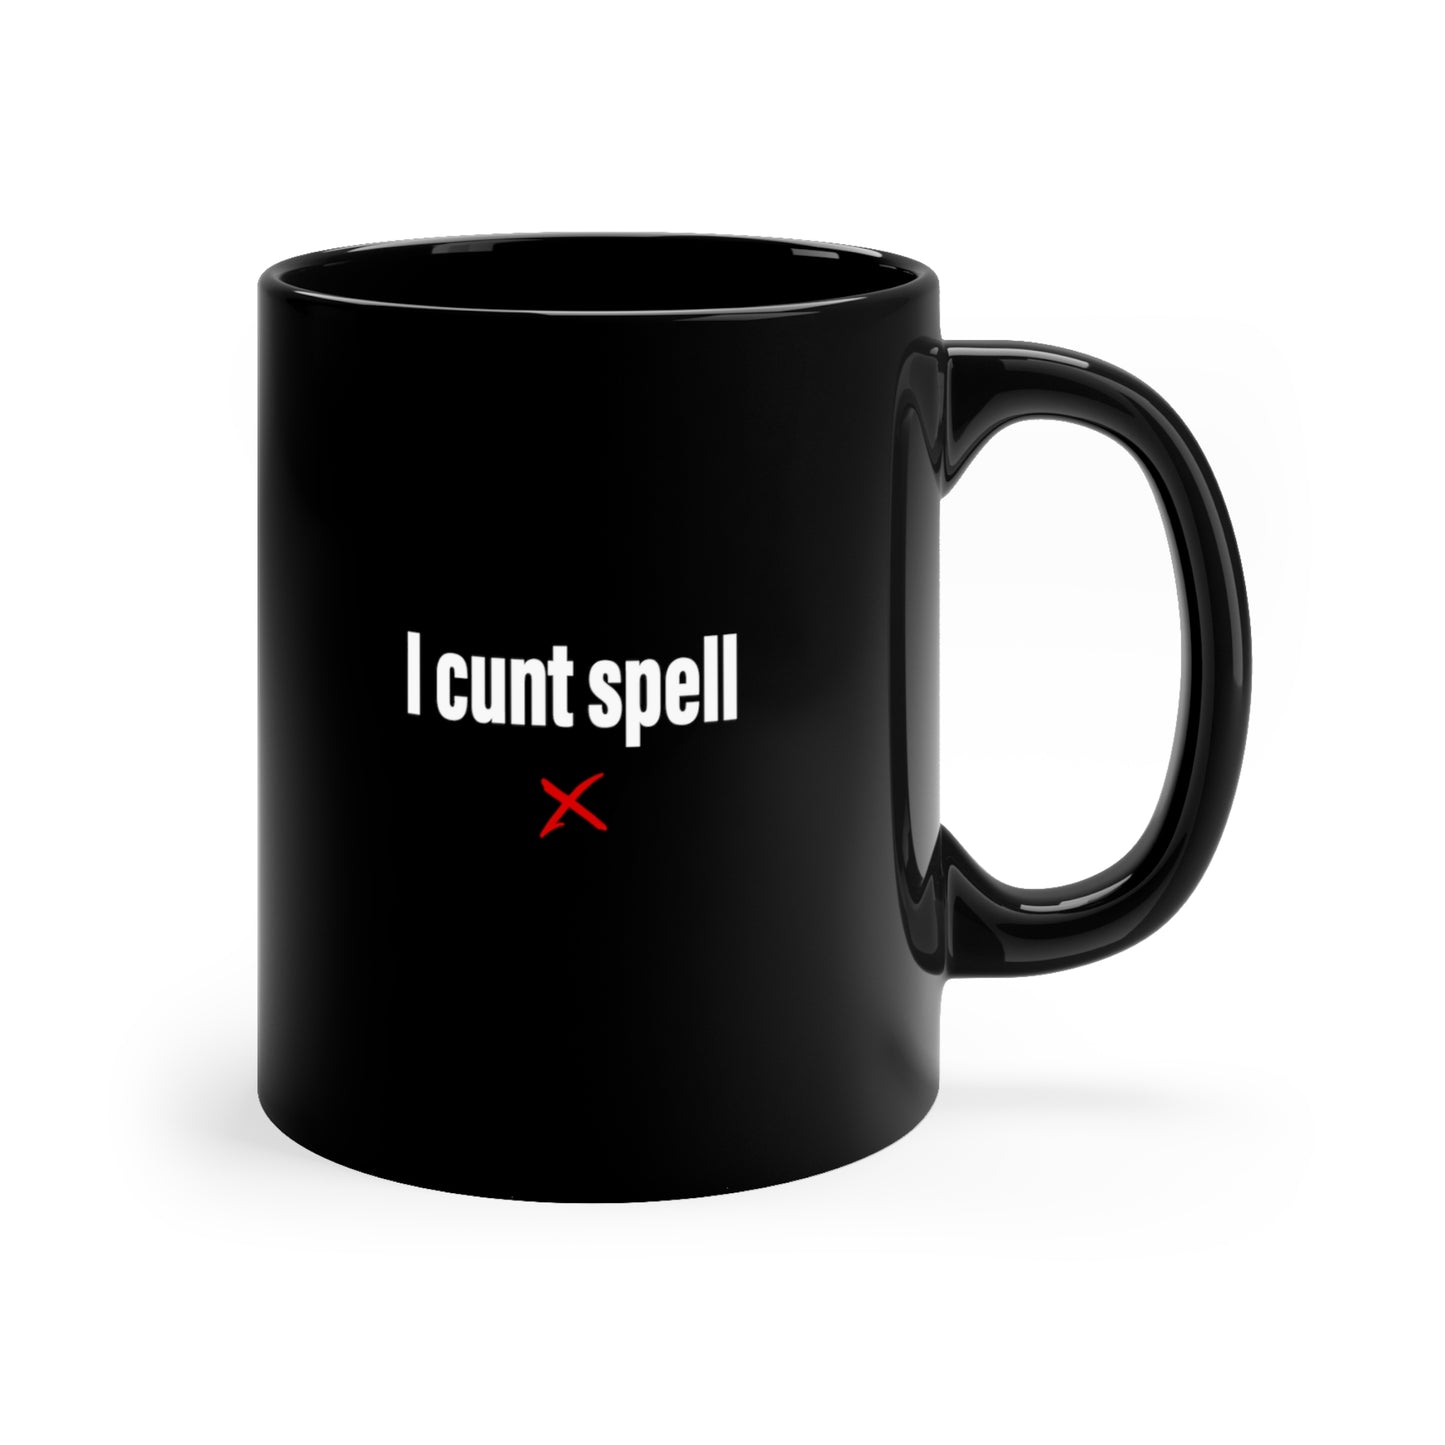 I cunt spell - Mug